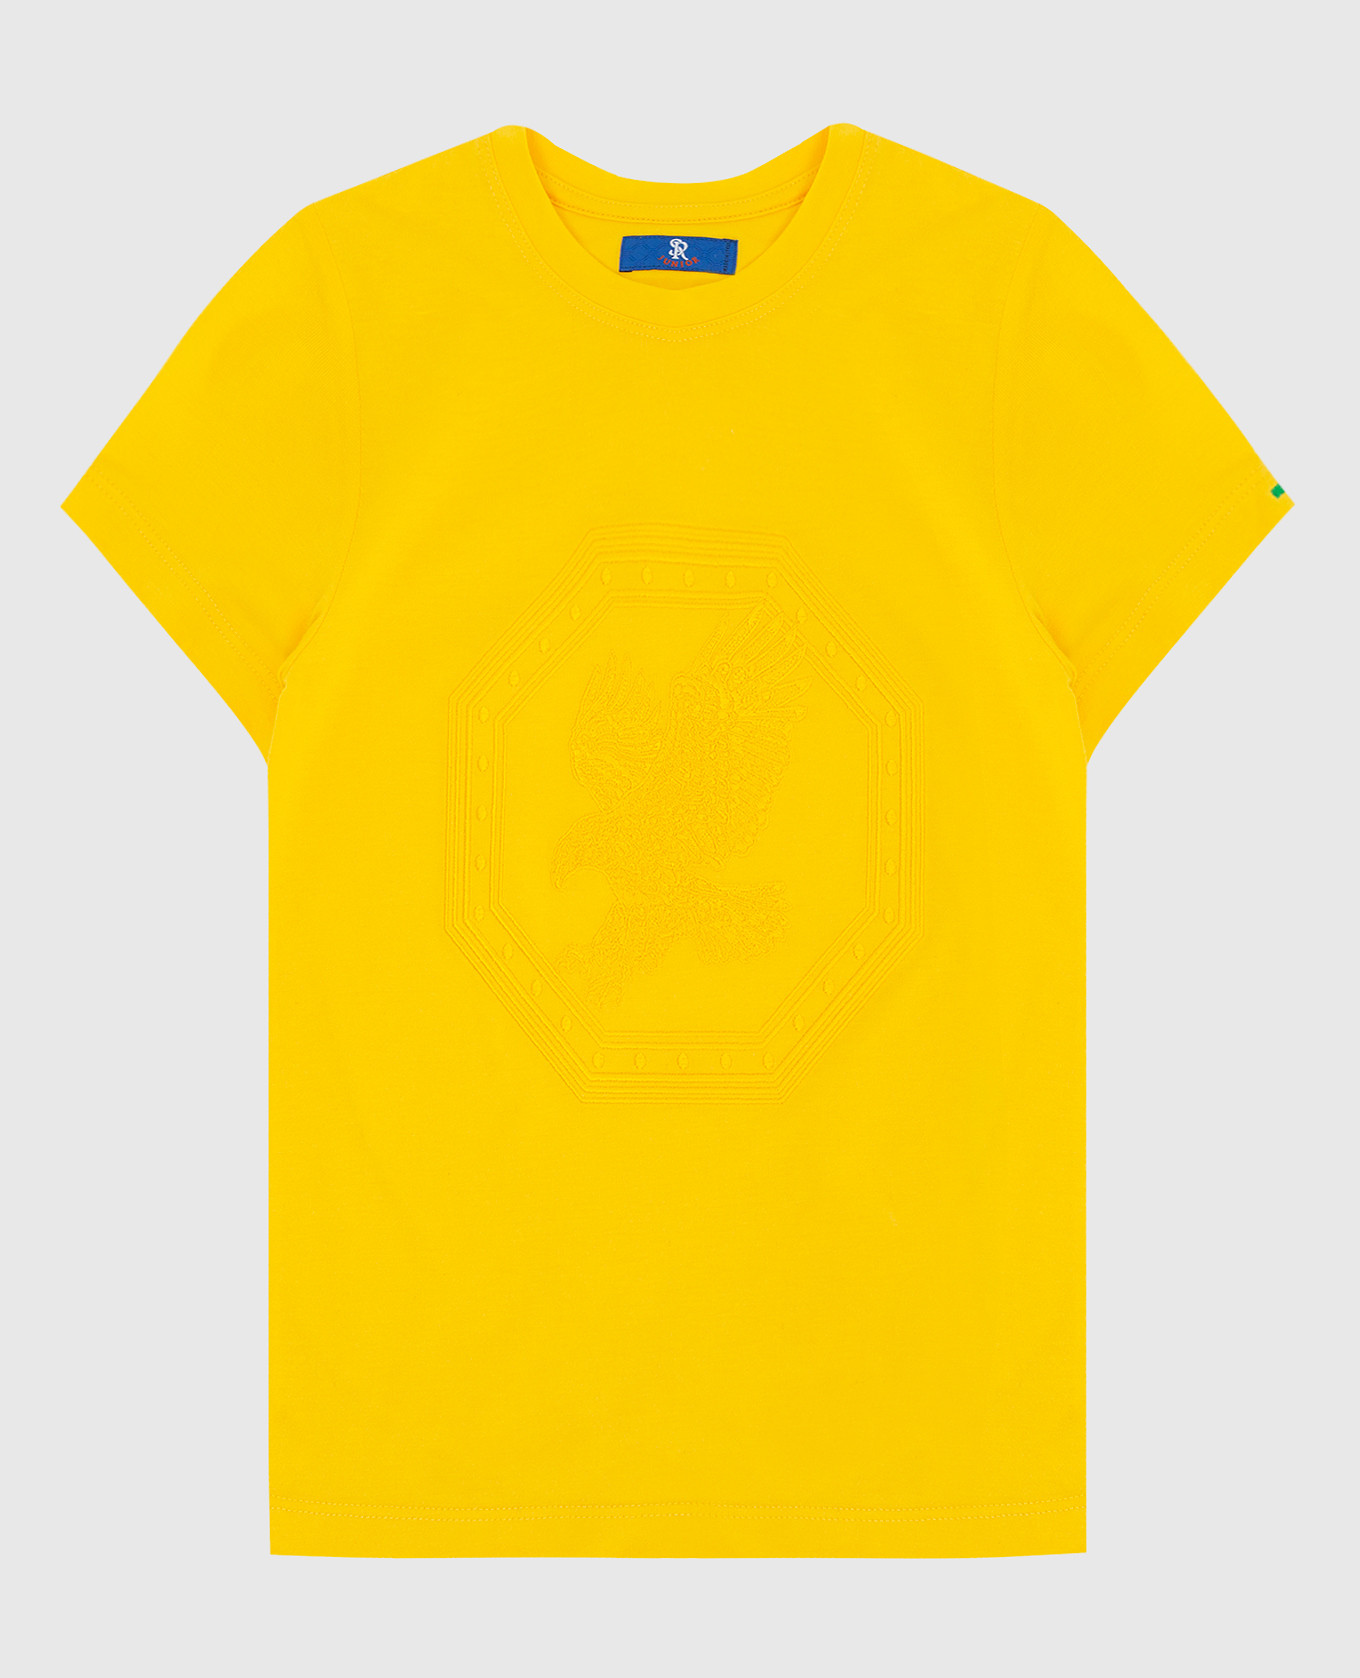 Детская желтая футболка с вышивкой эмблемы